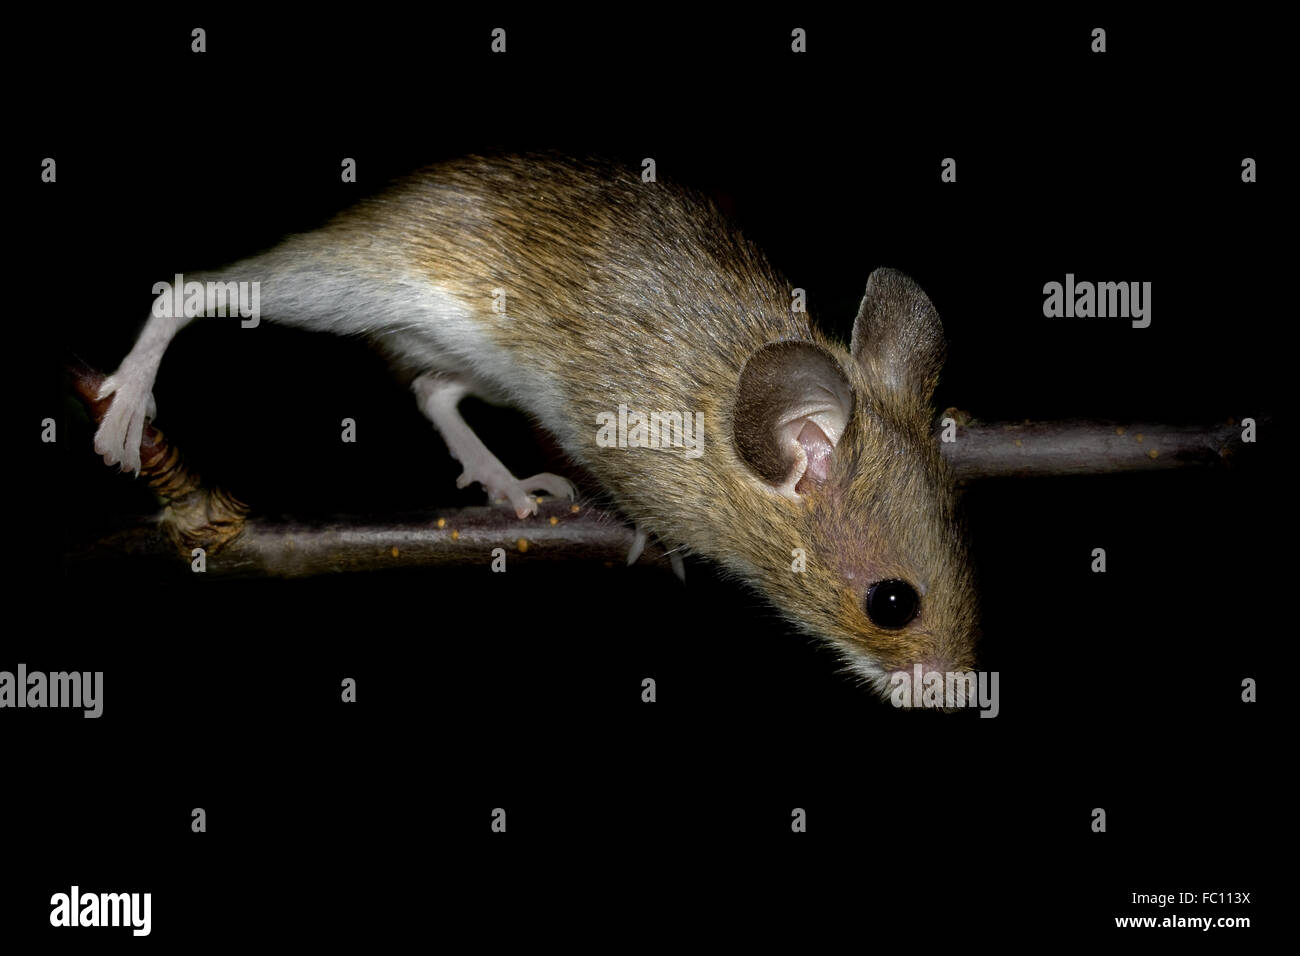 European wood mouse    Apodemus sylvaticus Stock Photo